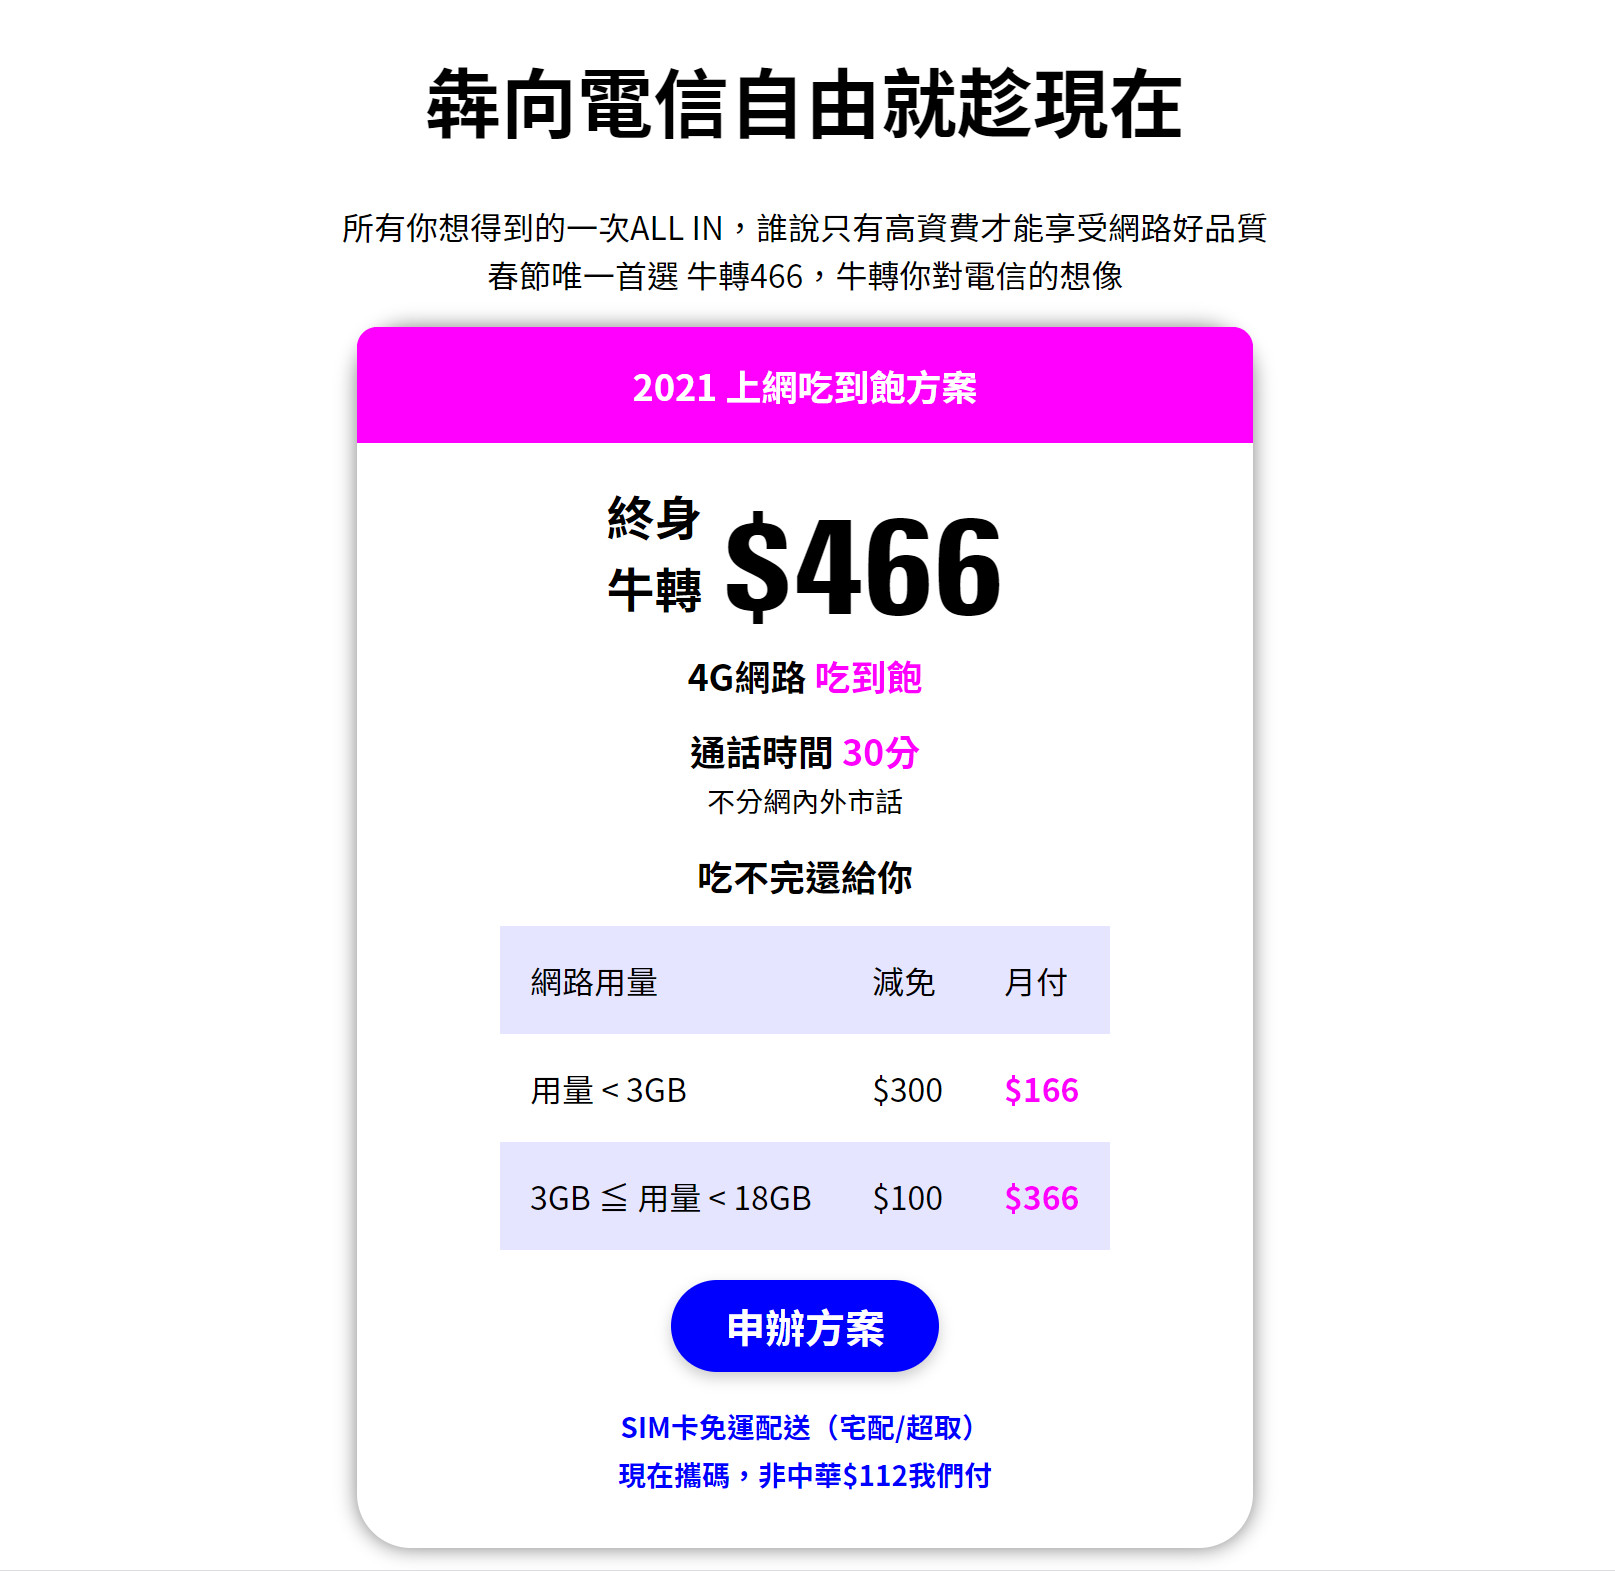 【無框行動】新春專案，中華電信大4G網路吃到飽466元，低流量只要166元!超適合搭配台灣之星雙11專案。 - 中華電信大4G網路吃到飽 - 敗家達人推薦